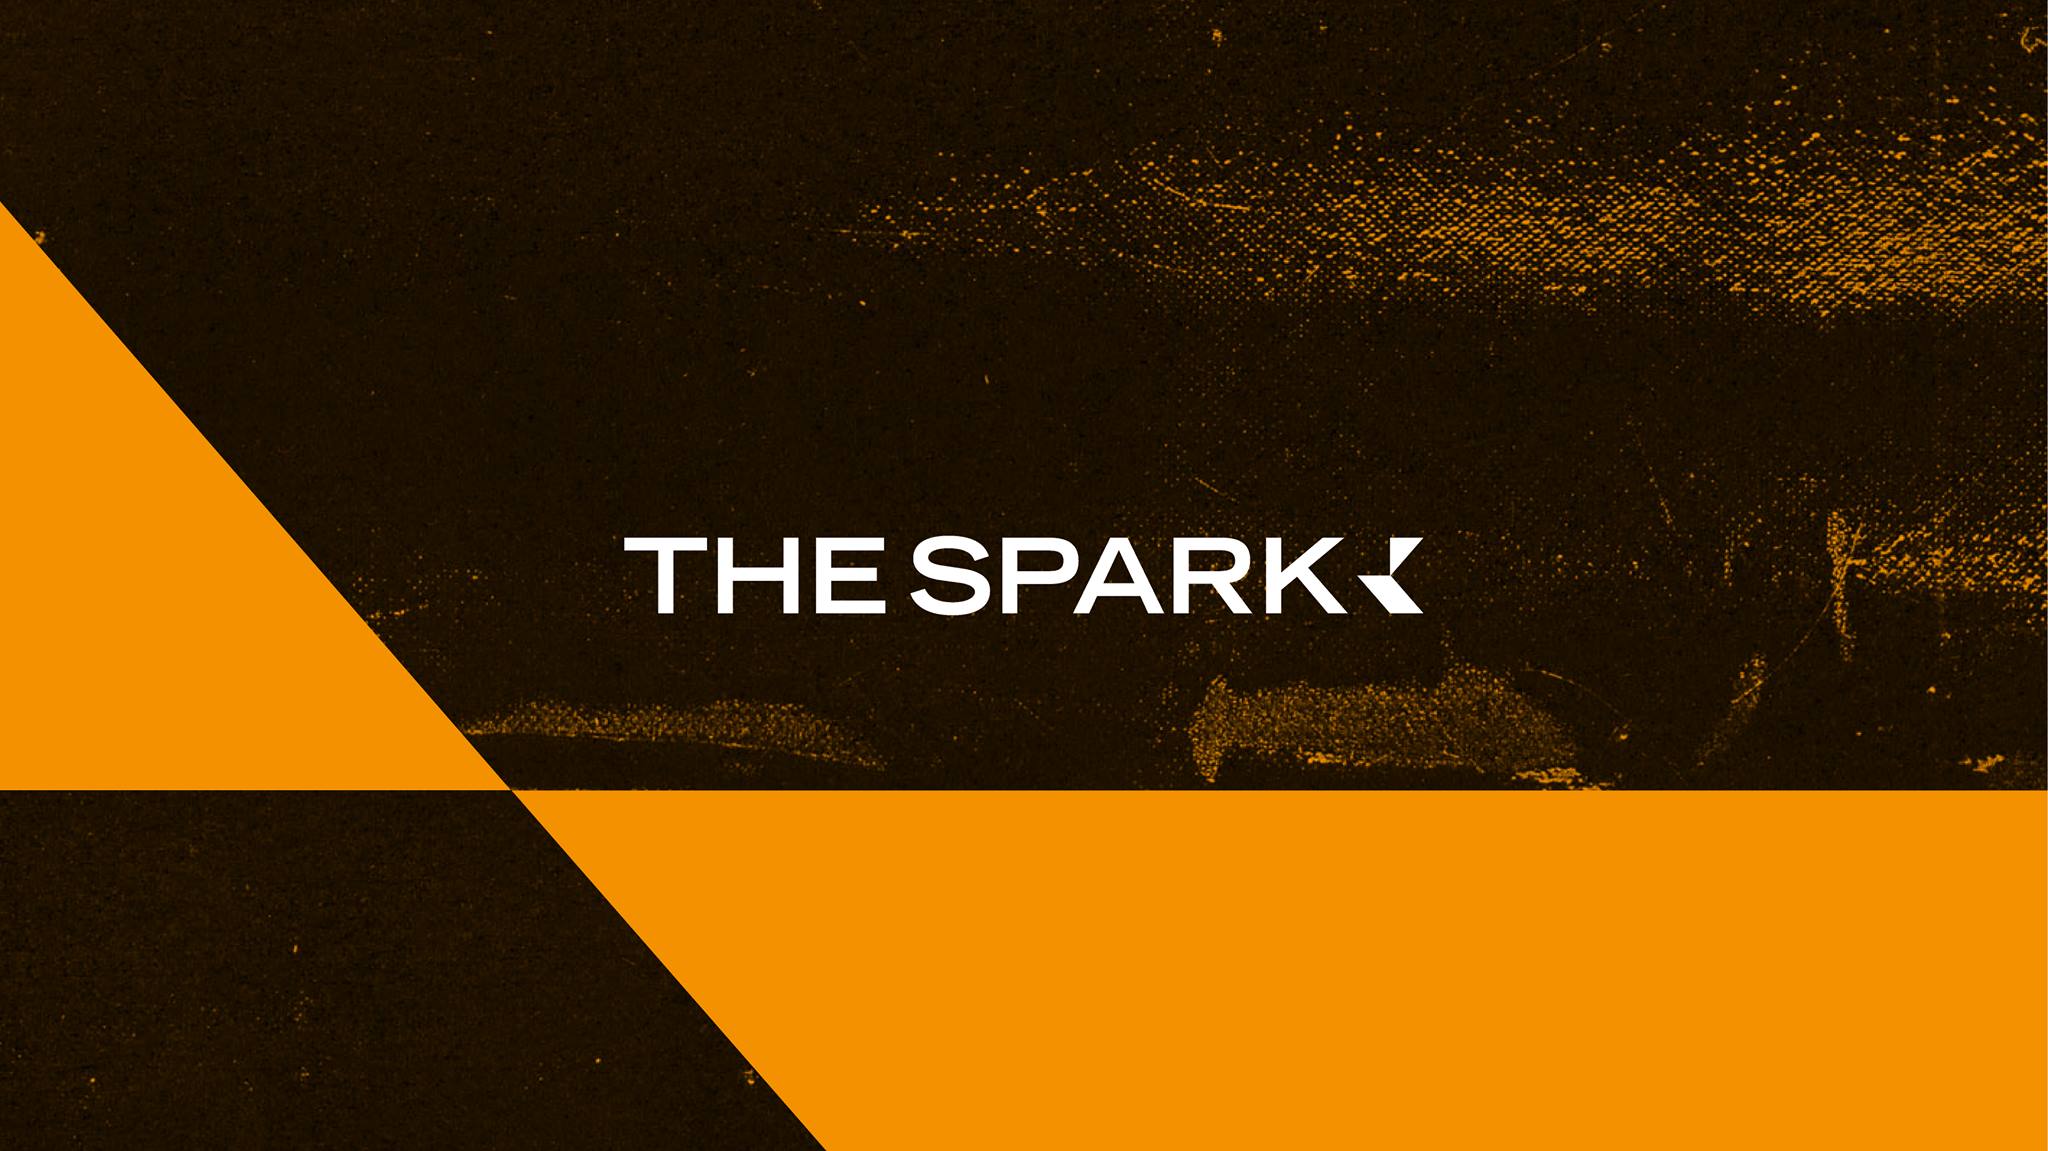 The Spark creative hub